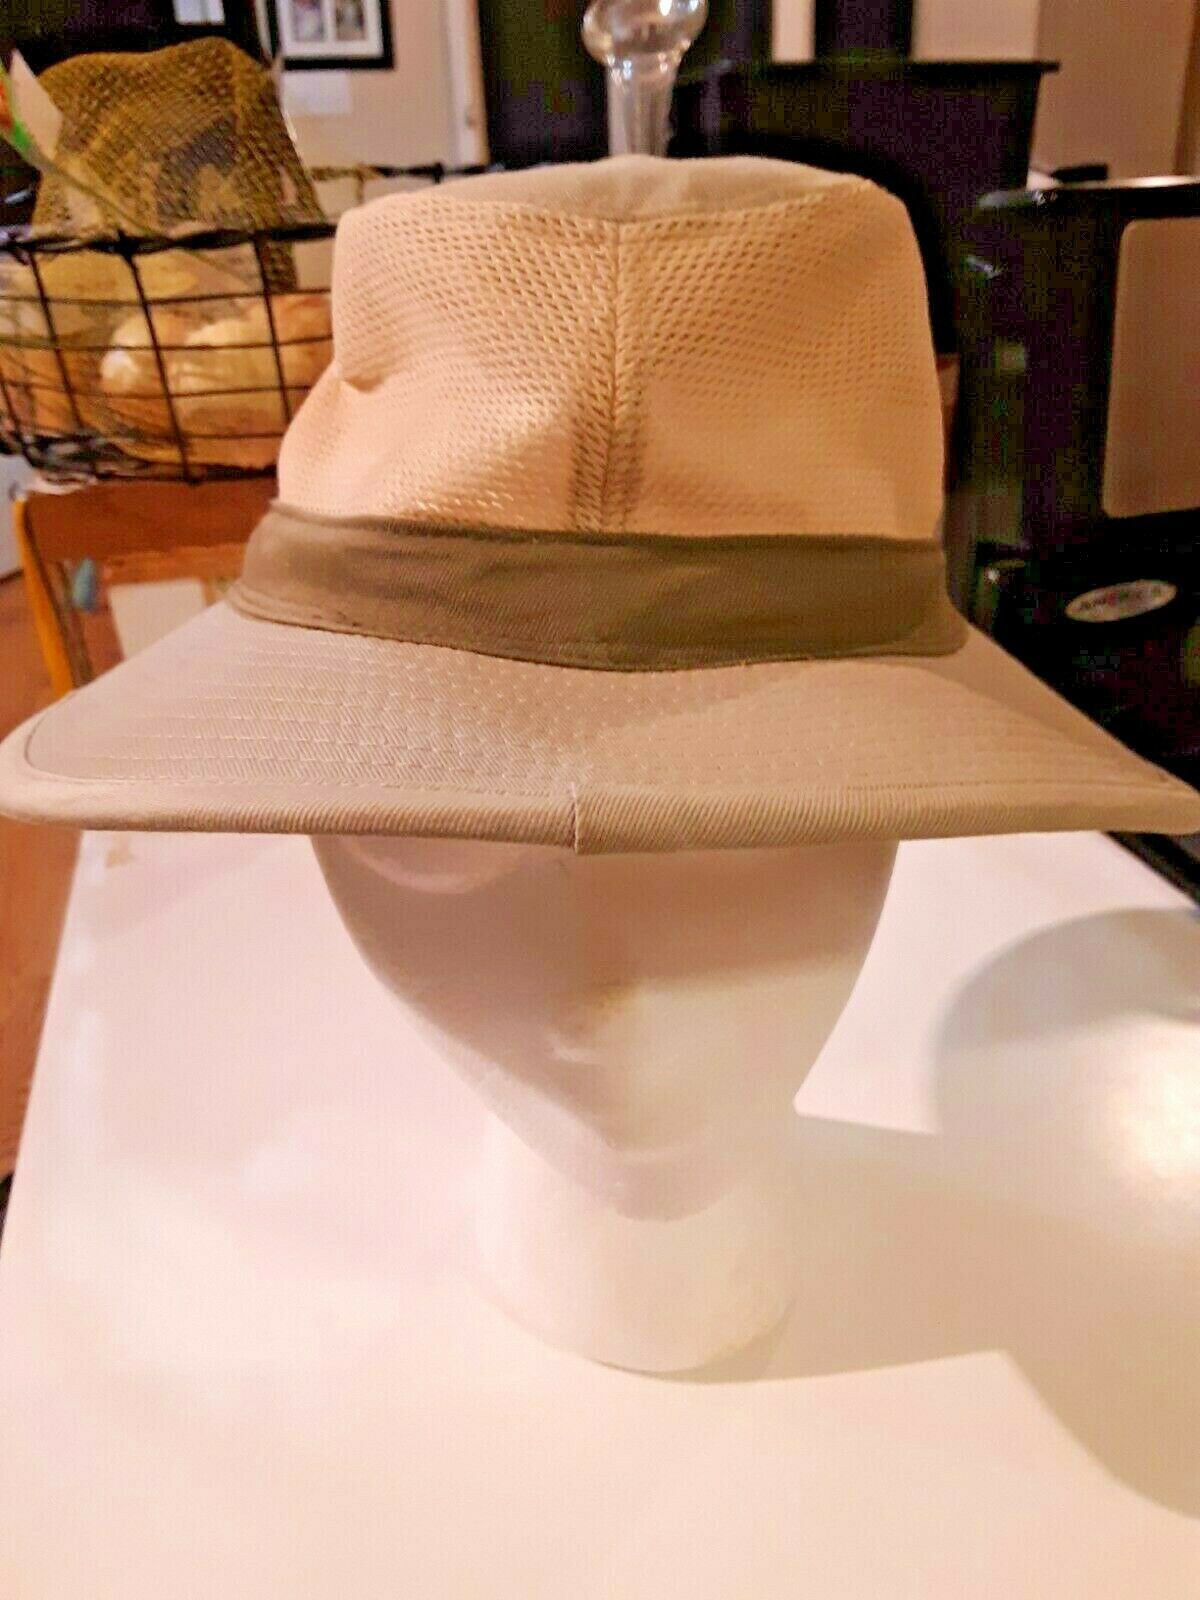 Primary image for Men's Bucket  Top Hat Size 21" diameter s/m Beige Mesh